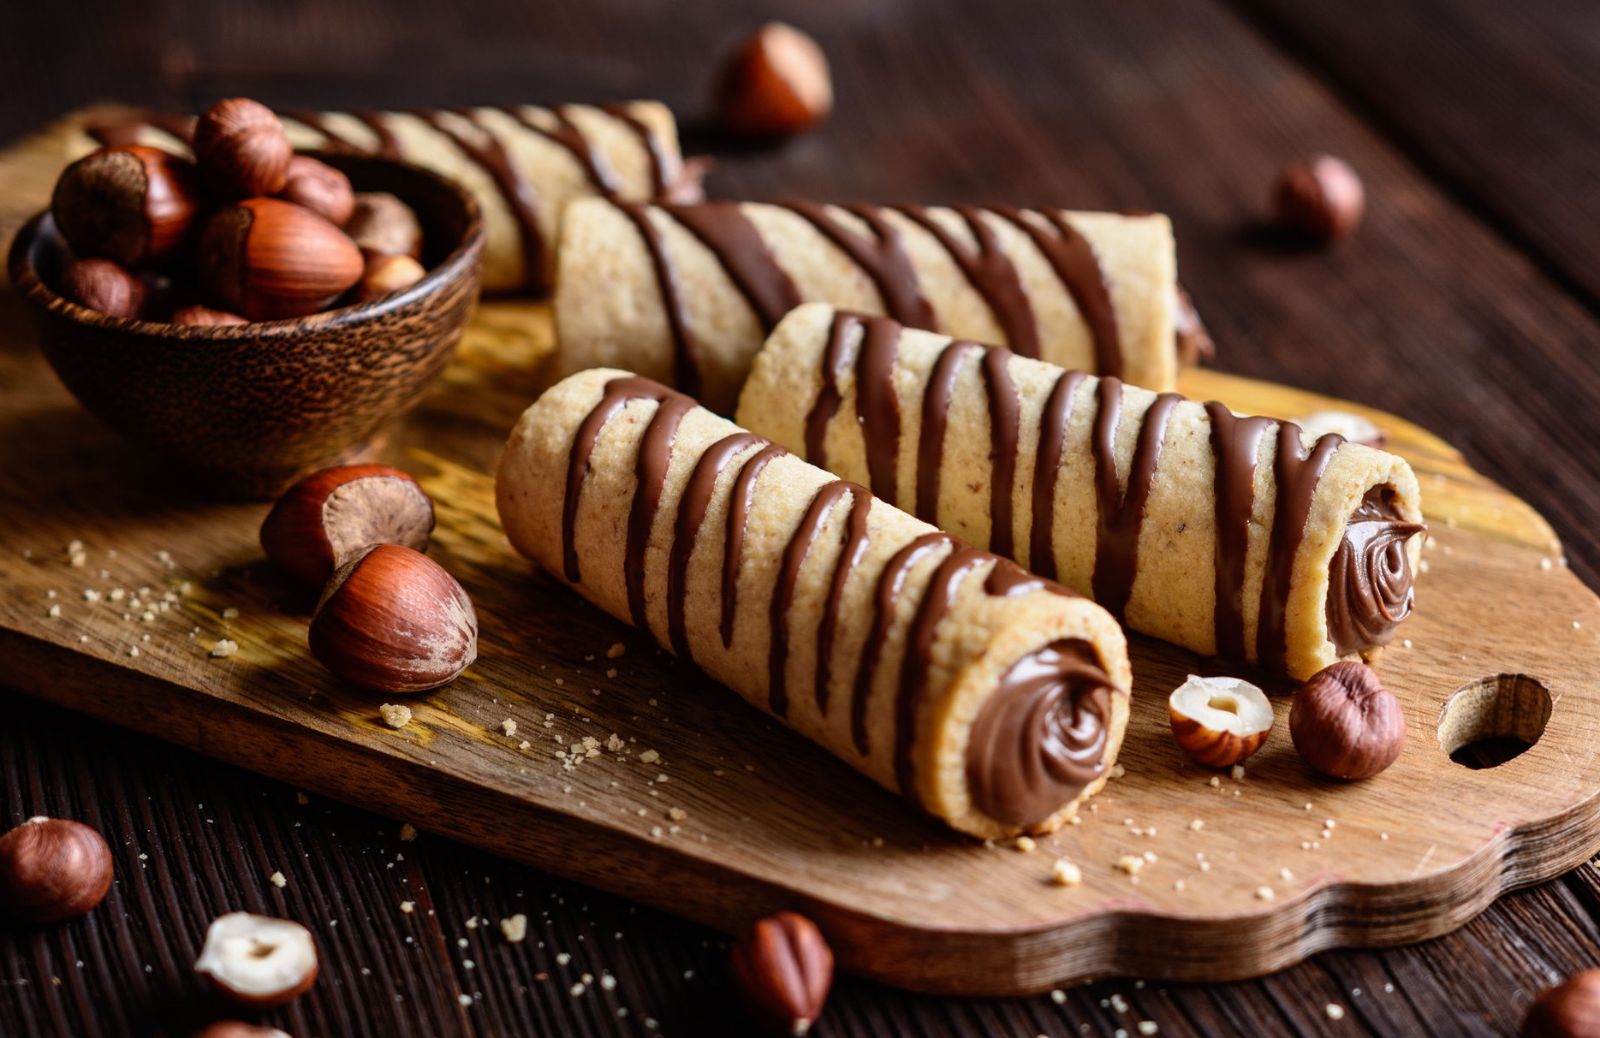 Queste 5 incredibili ricette alla Nutella vi faranno dimenticare i Nutella biscuits